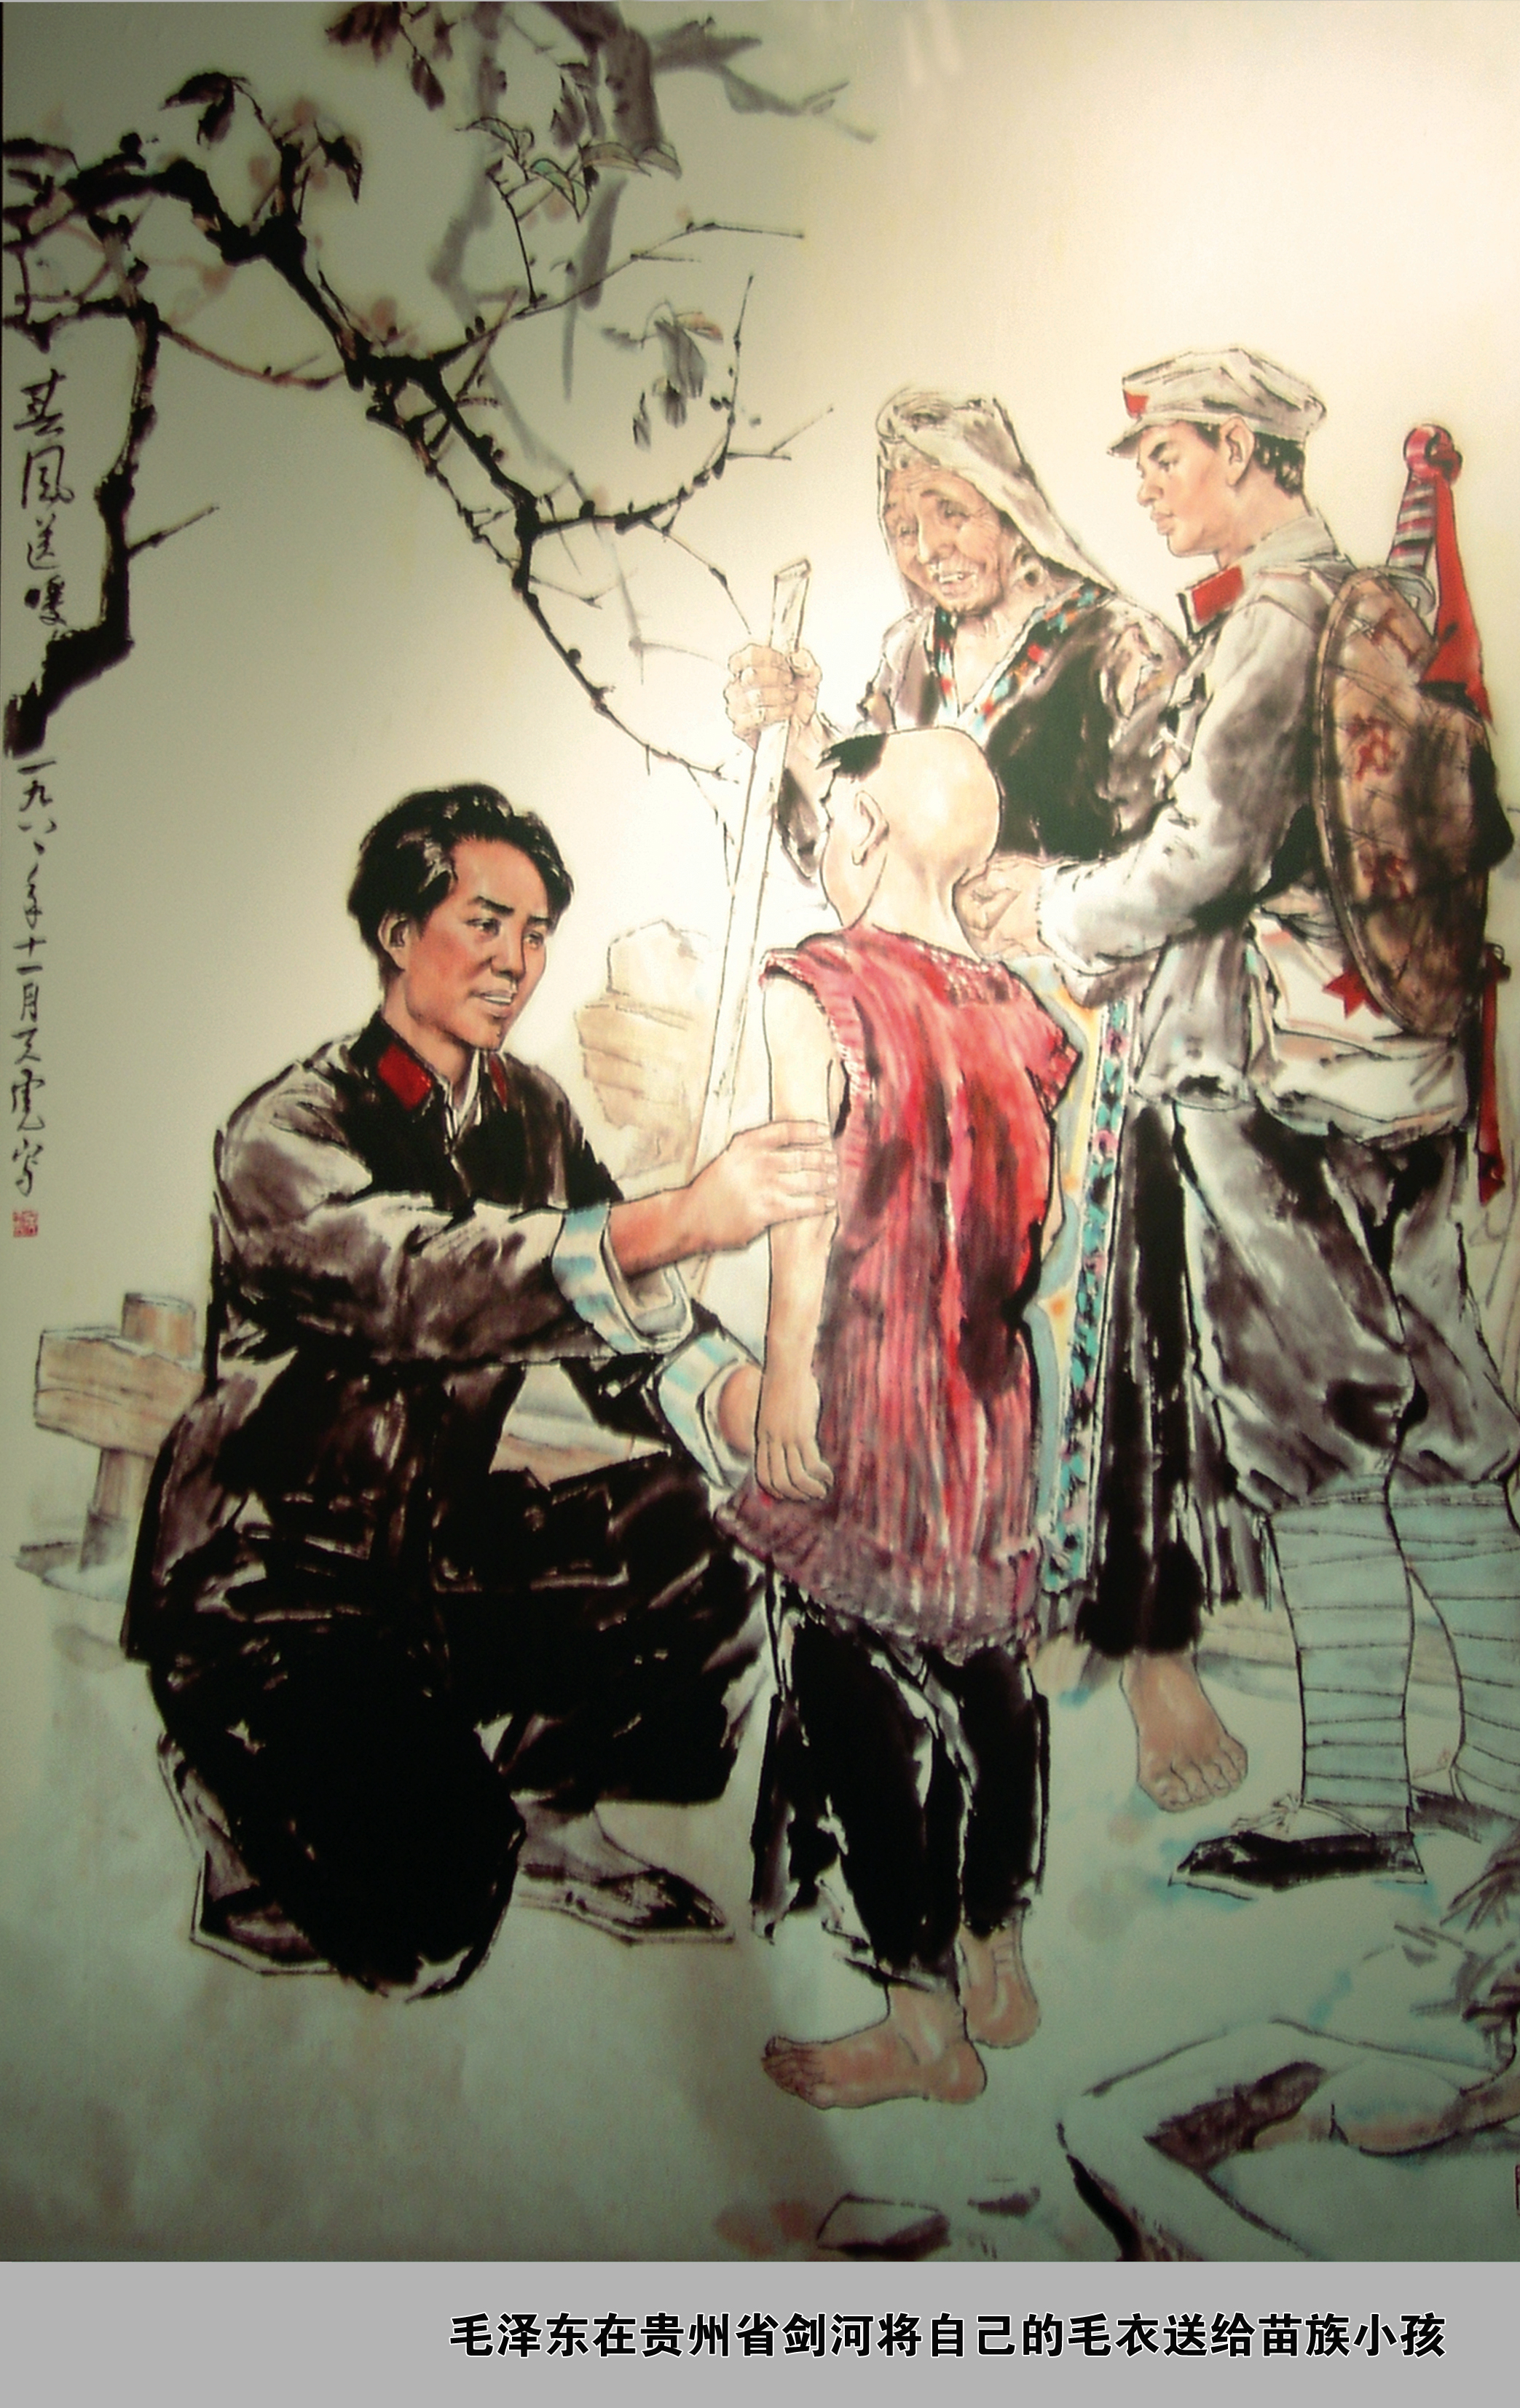 贵州画家黄天虎以毛泽东向苗族赠送毛衣为题材创作的国画《春风送暖》.jpg